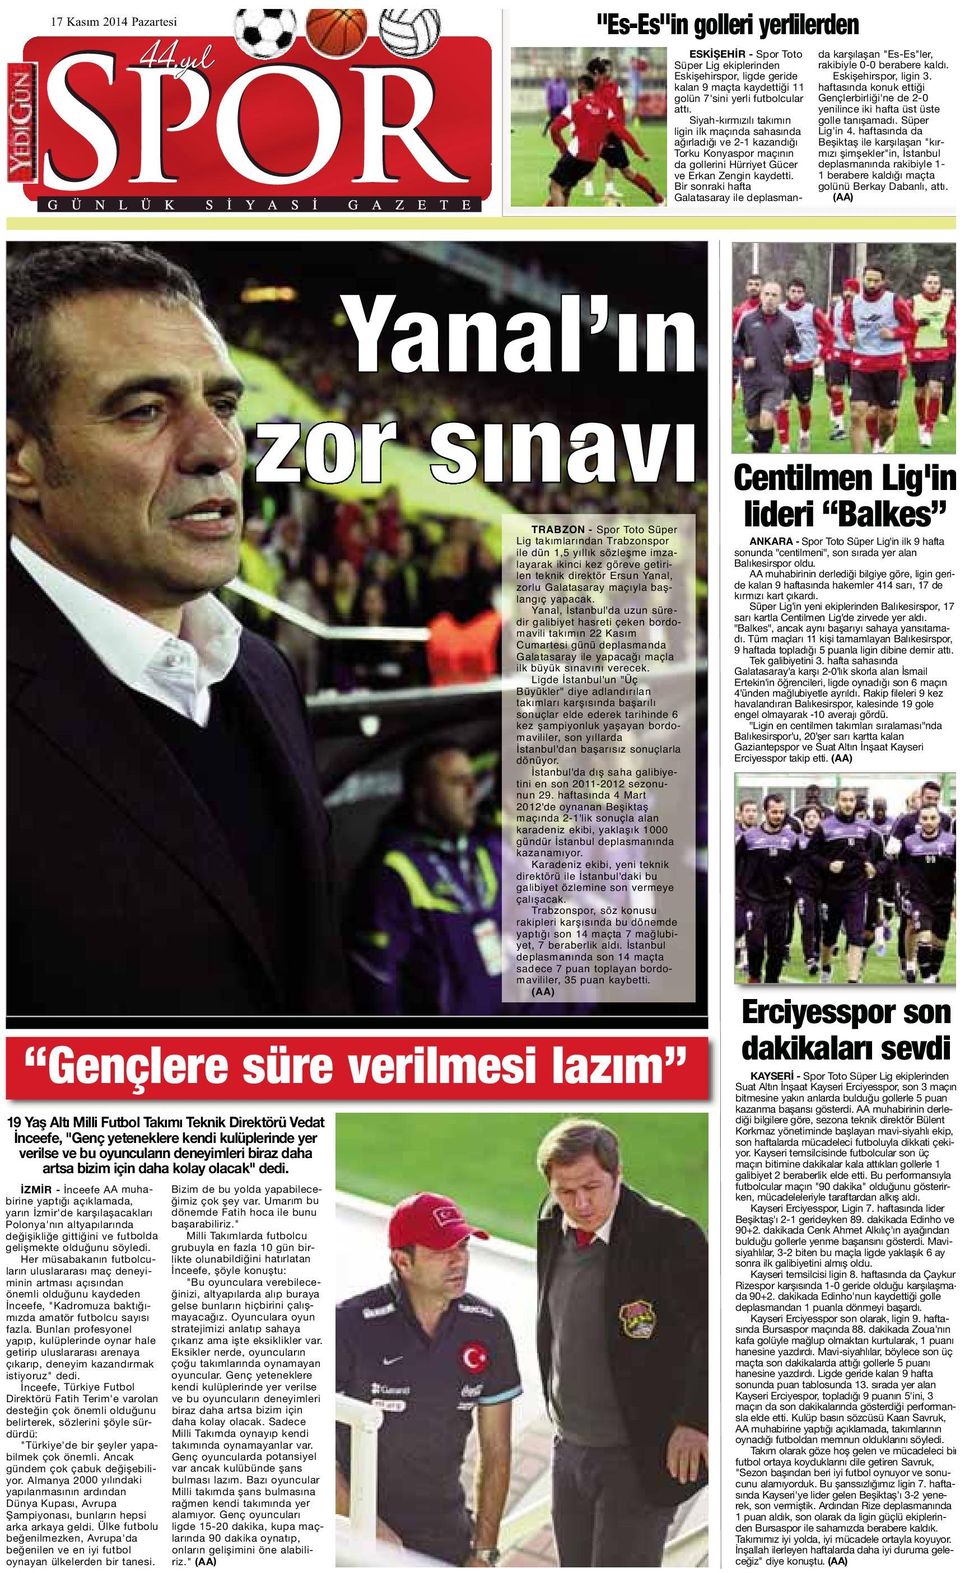 Yanal, İstanbul'da uzun süredir galibiyet hasreti çeken bordomavili takımın 22 Kasım Cumartesi günü deplasmanda Galatasaray ile yapacağı maçla ilk büyük sınavını verecek.